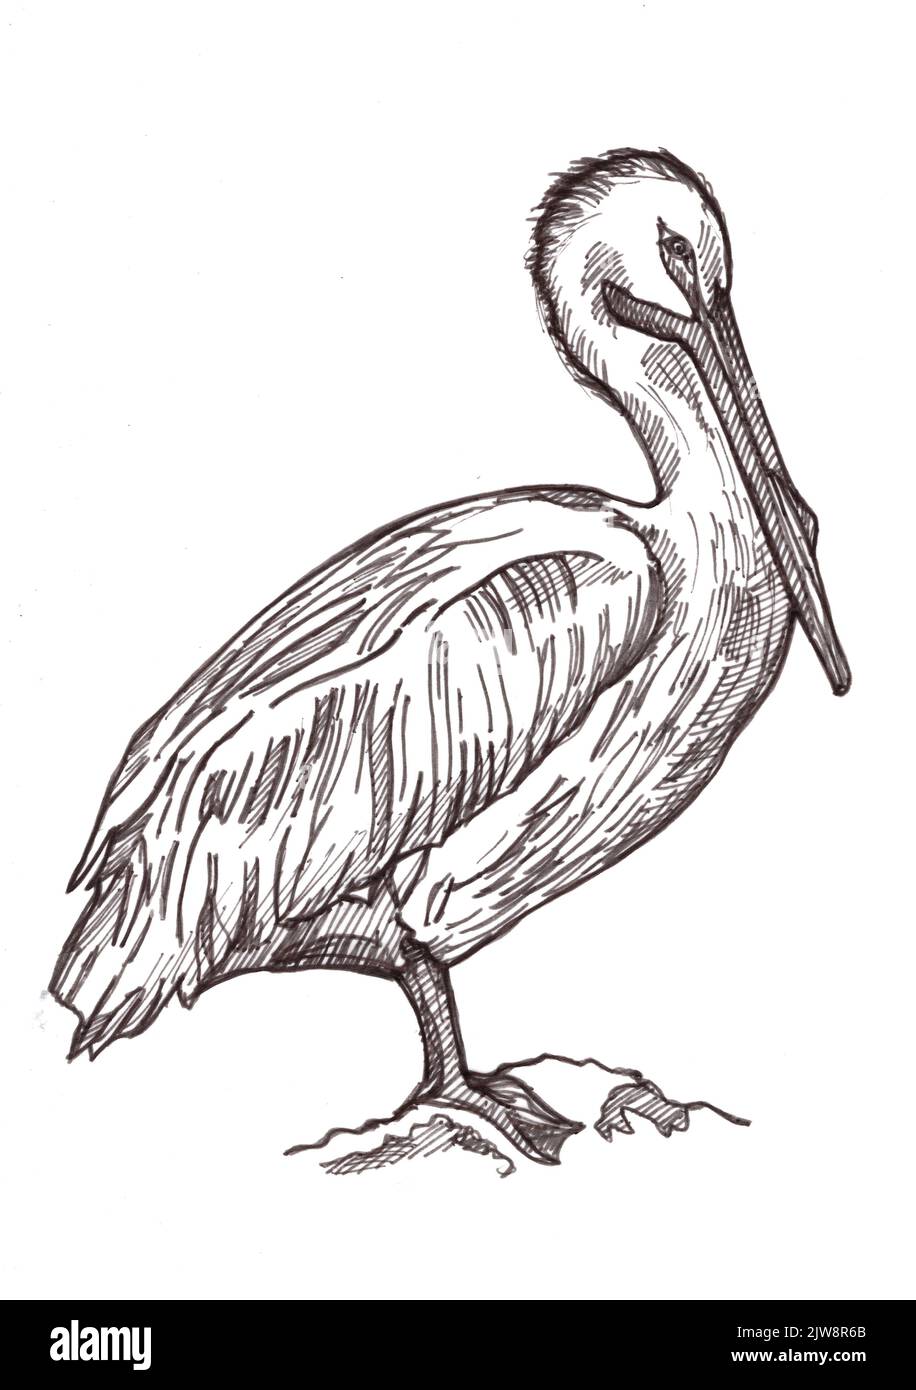 Schwarz-weiße Abbildung eines Pelikans auf weißem Hintergrund. Stockfoto